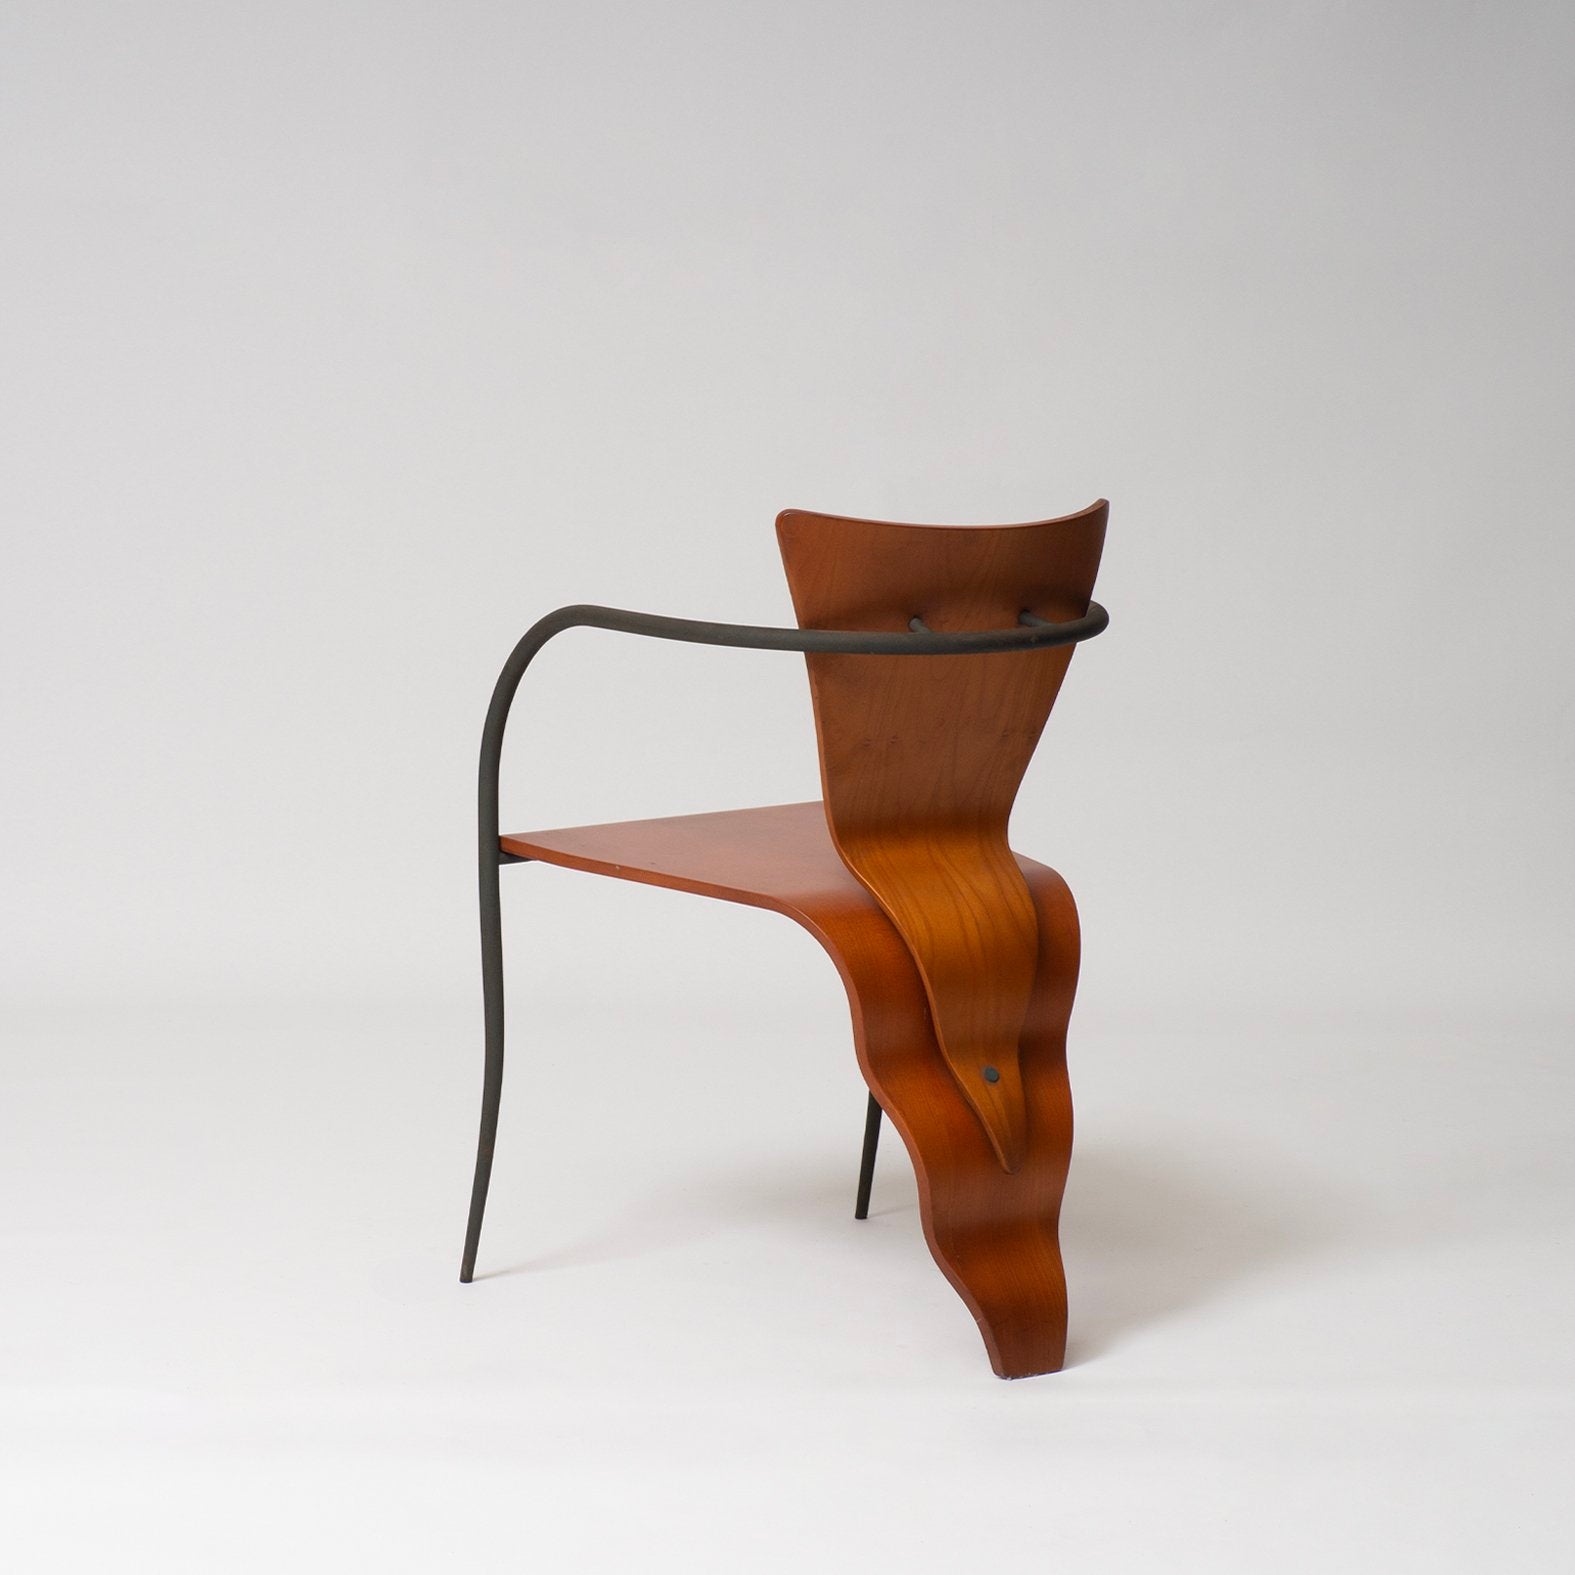 Le Belle Armchair by Swaya & Moroni